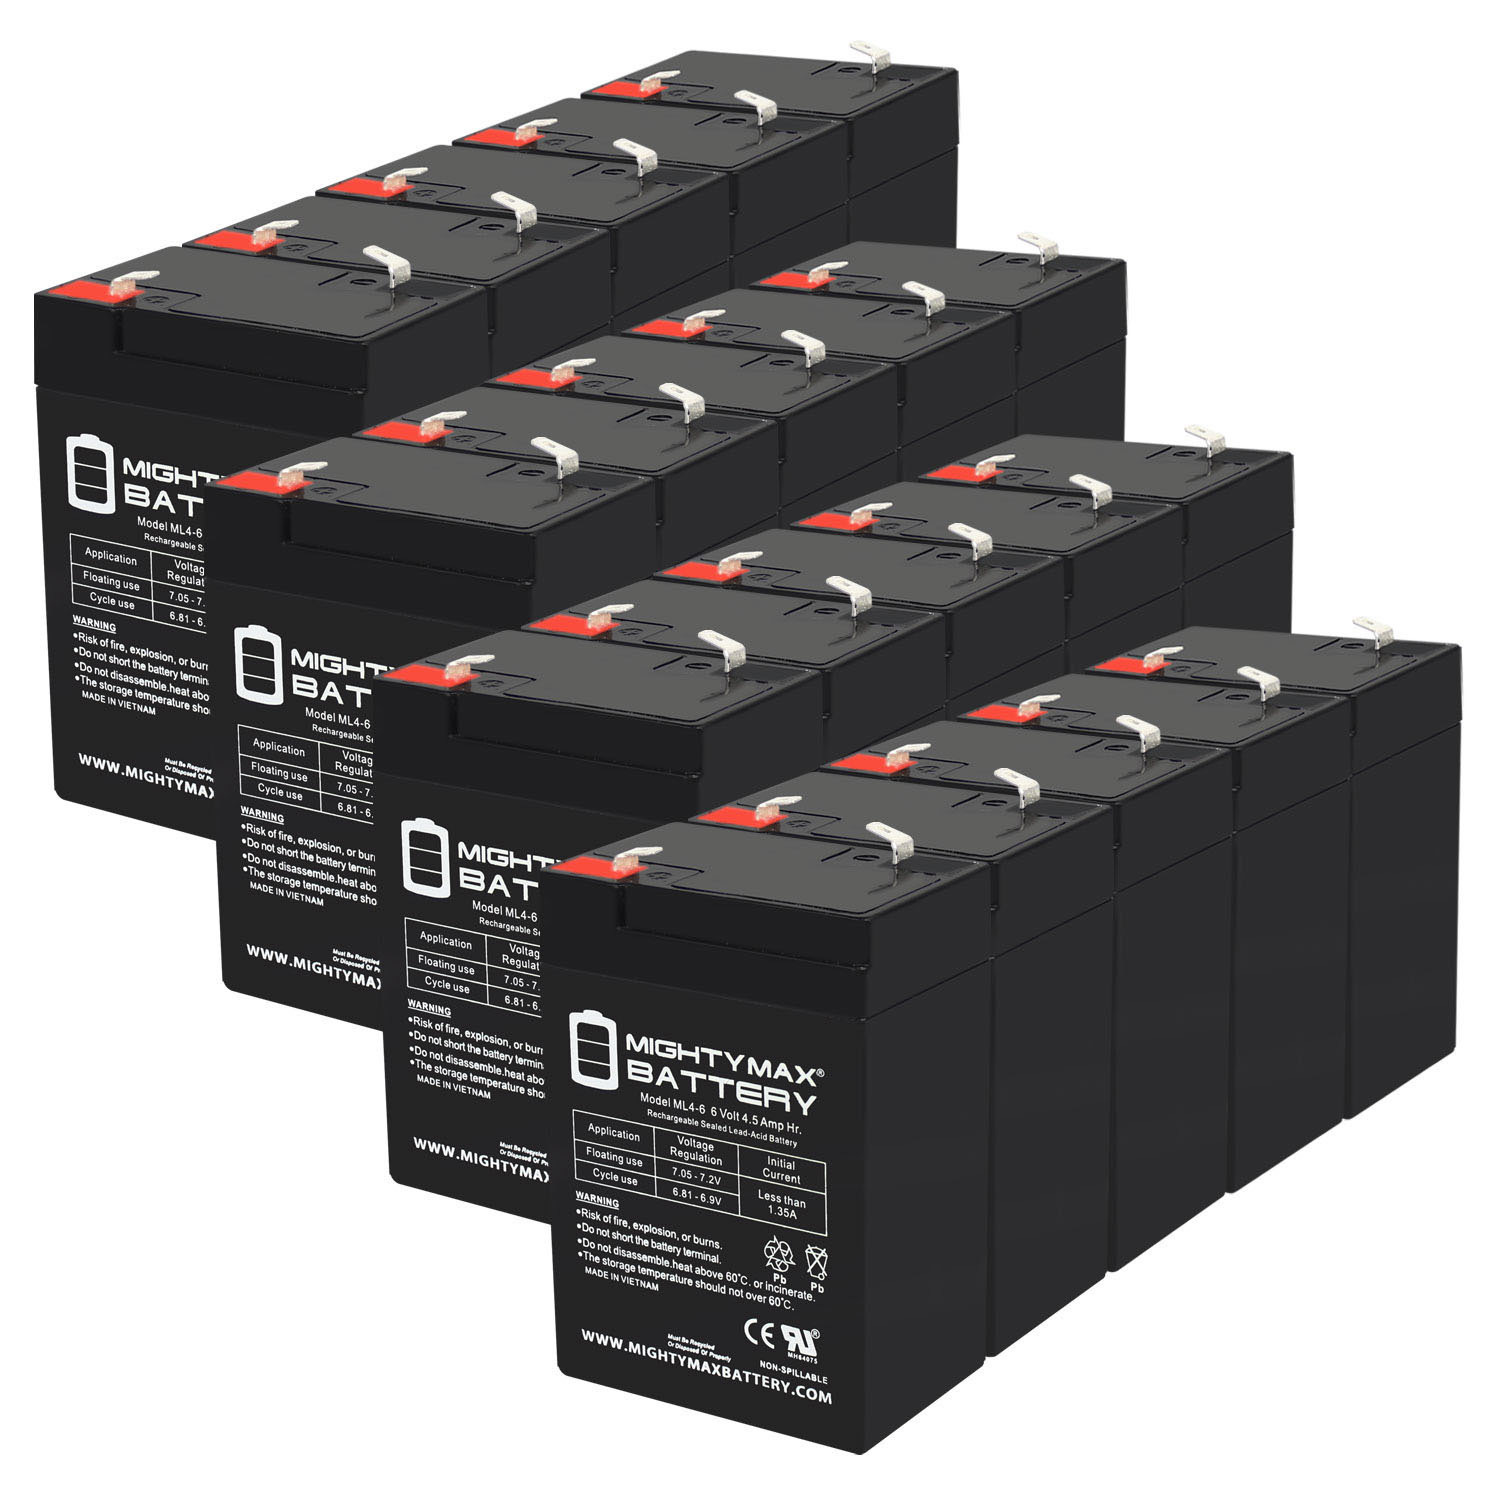 6V 4.5AH SLA Replacement Battery for ELS 6VLC4 - 20 Pack